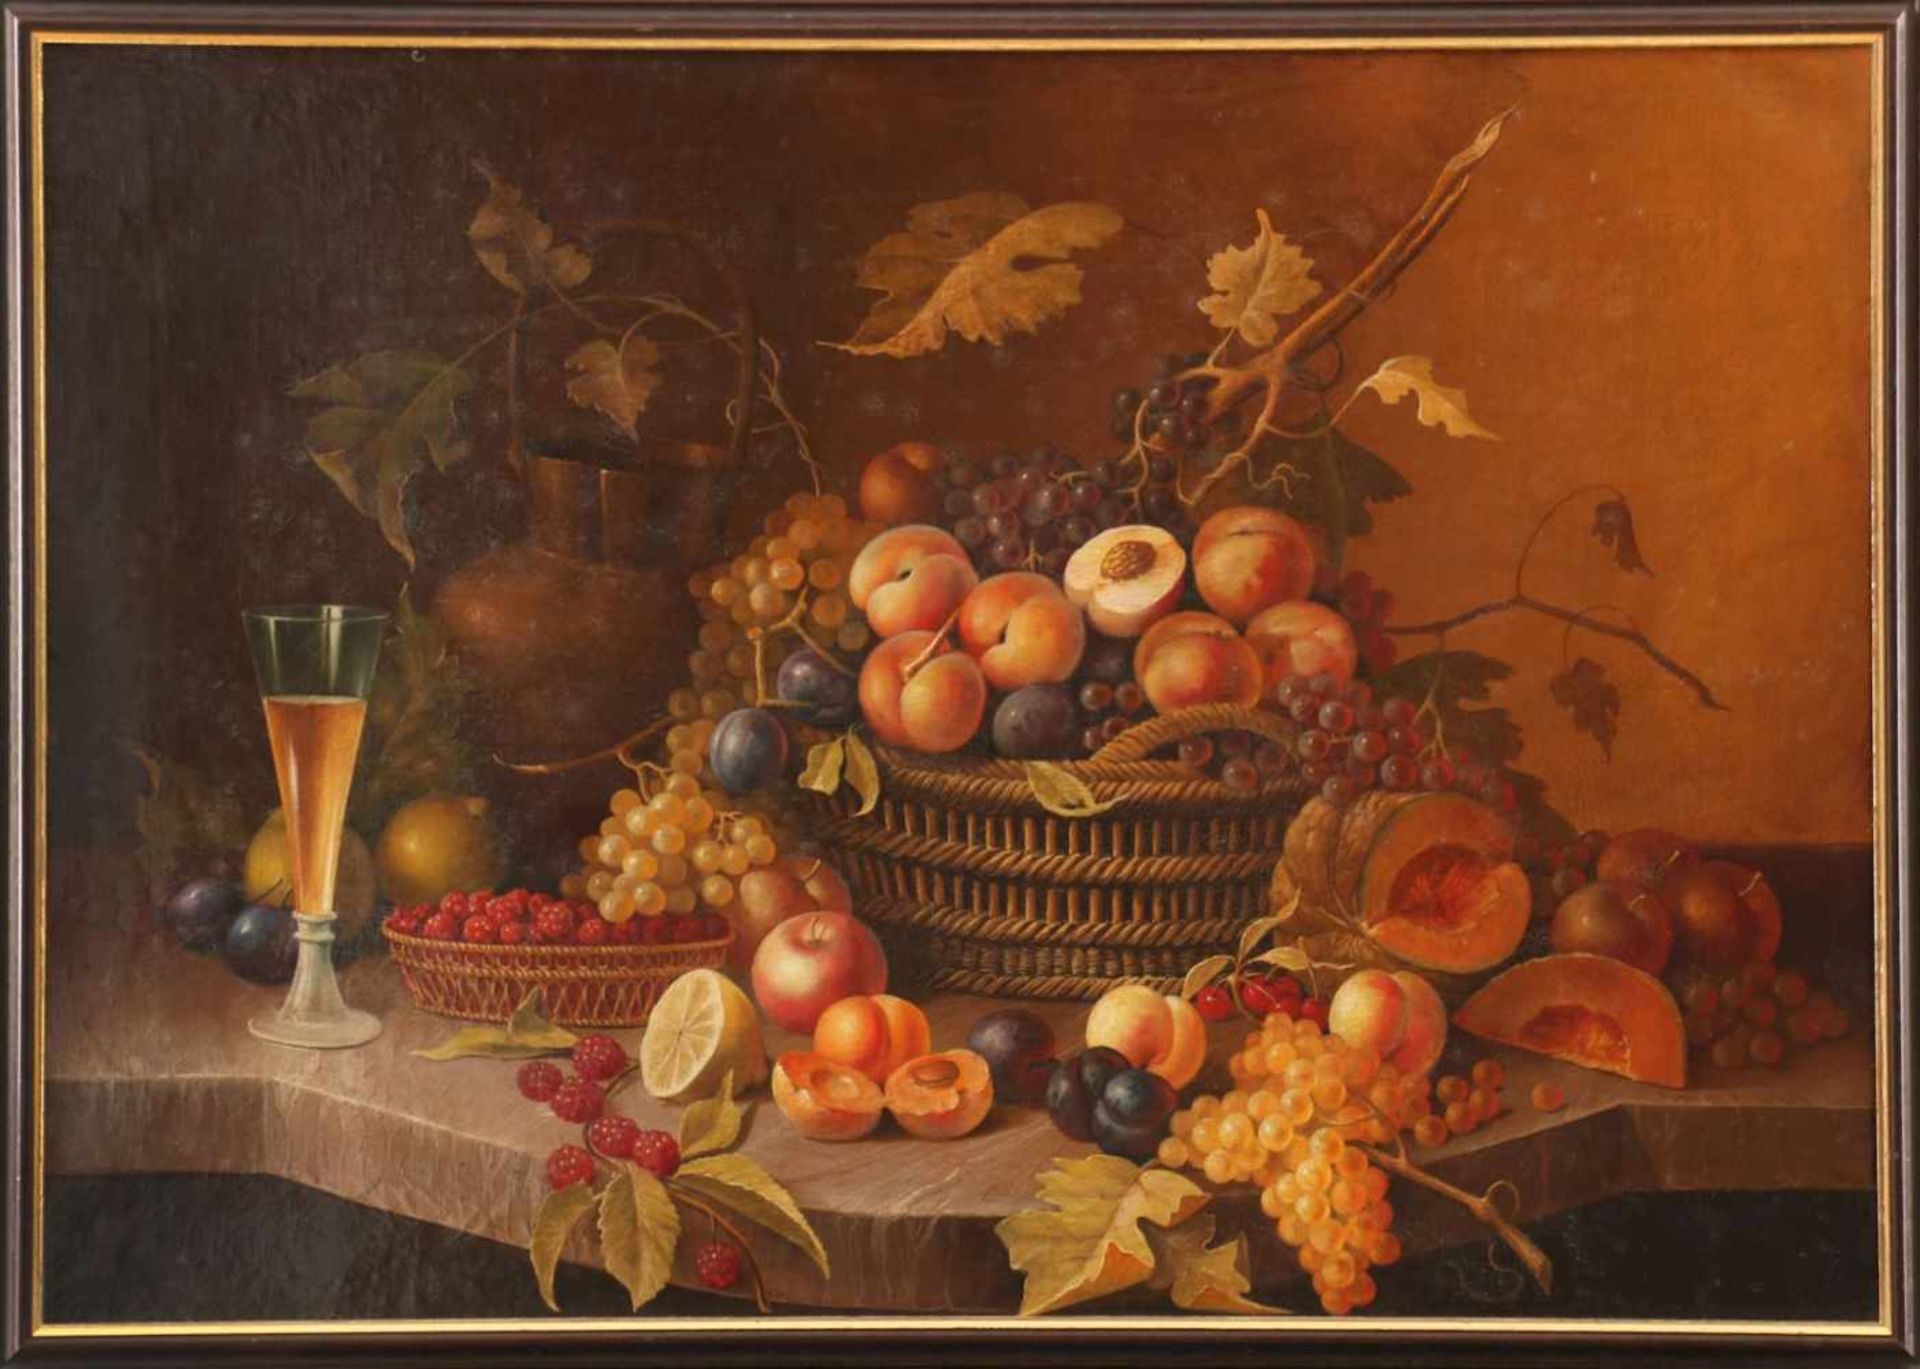 ANONYMER KÜNSTLER des 19. Jahrhunderts Öl auf Leinwand, ¨Stillleben mit Früchten, Reben, Weinglas